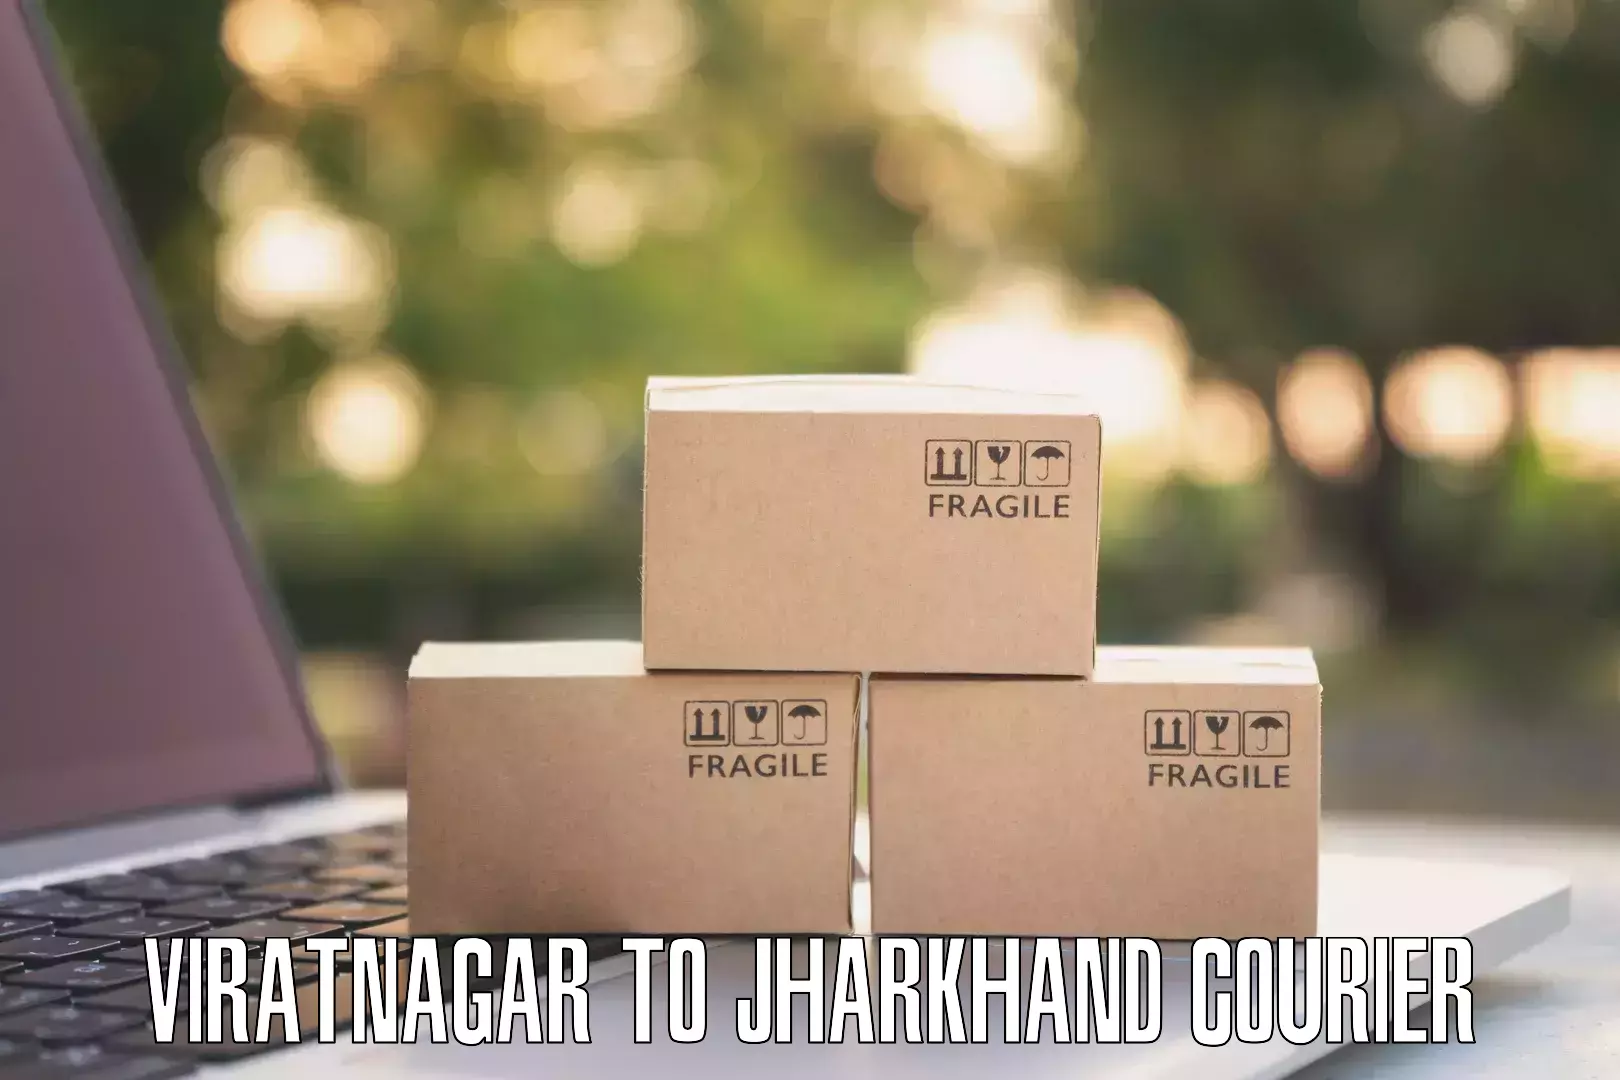 Courier app Viratnagar to Domchanch